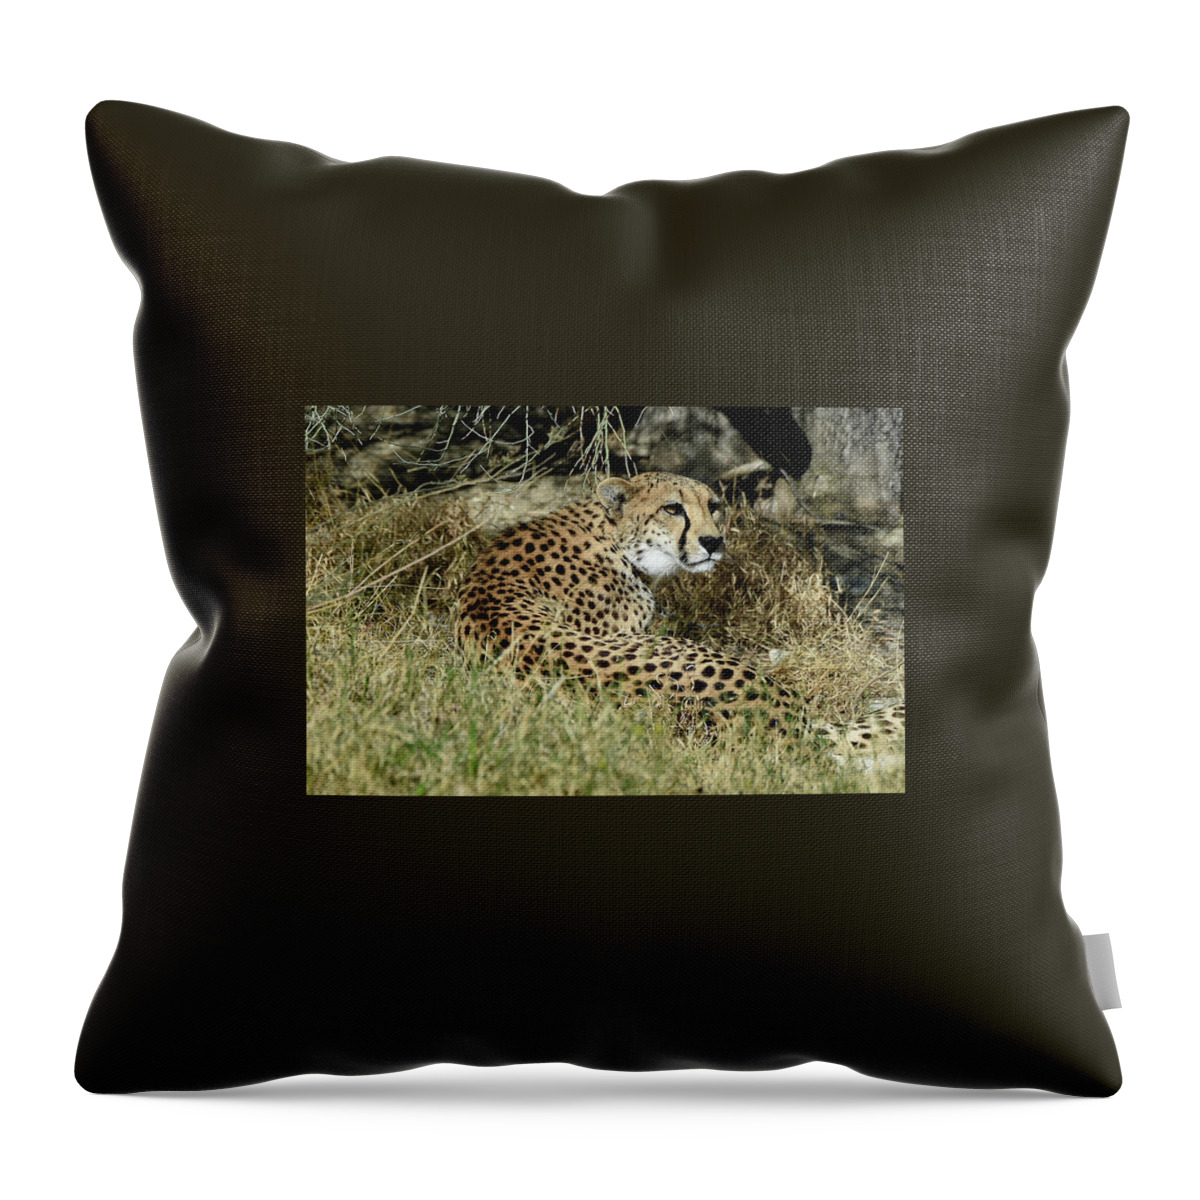 Cheetah Throw Pillow featuring the photograph Cheetah in Living Desert Zoo, Palm Desert, California by Bonnie Colgan